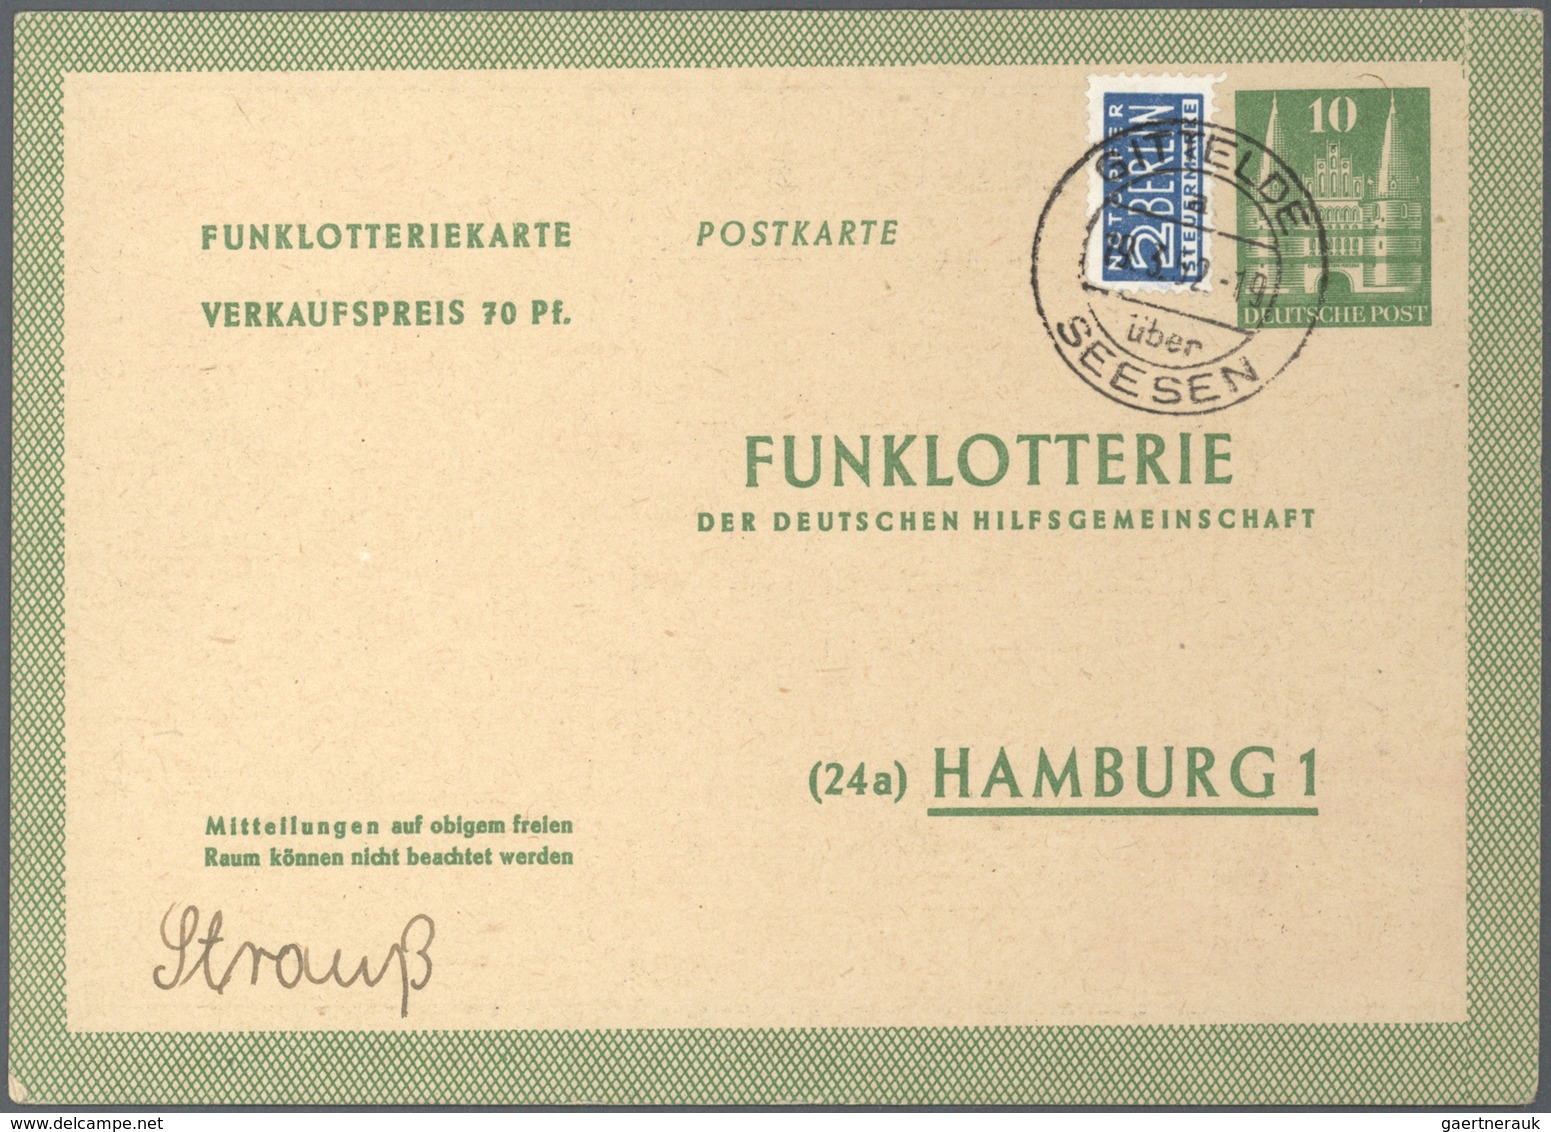 Bundesrepublik - Ganzsachen: 1948/2011. Umfangreiche Sammlung mit einigen hundert Karten, Luftpostle